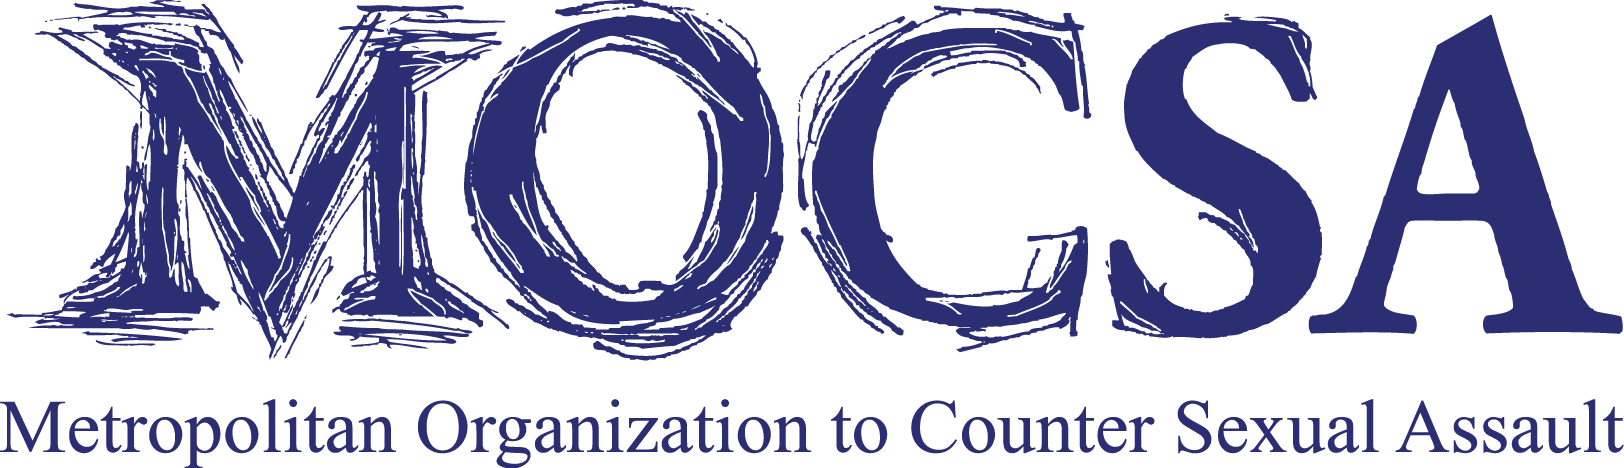 MOCSA : Metropolitan Organization to Counter Sexual Assault